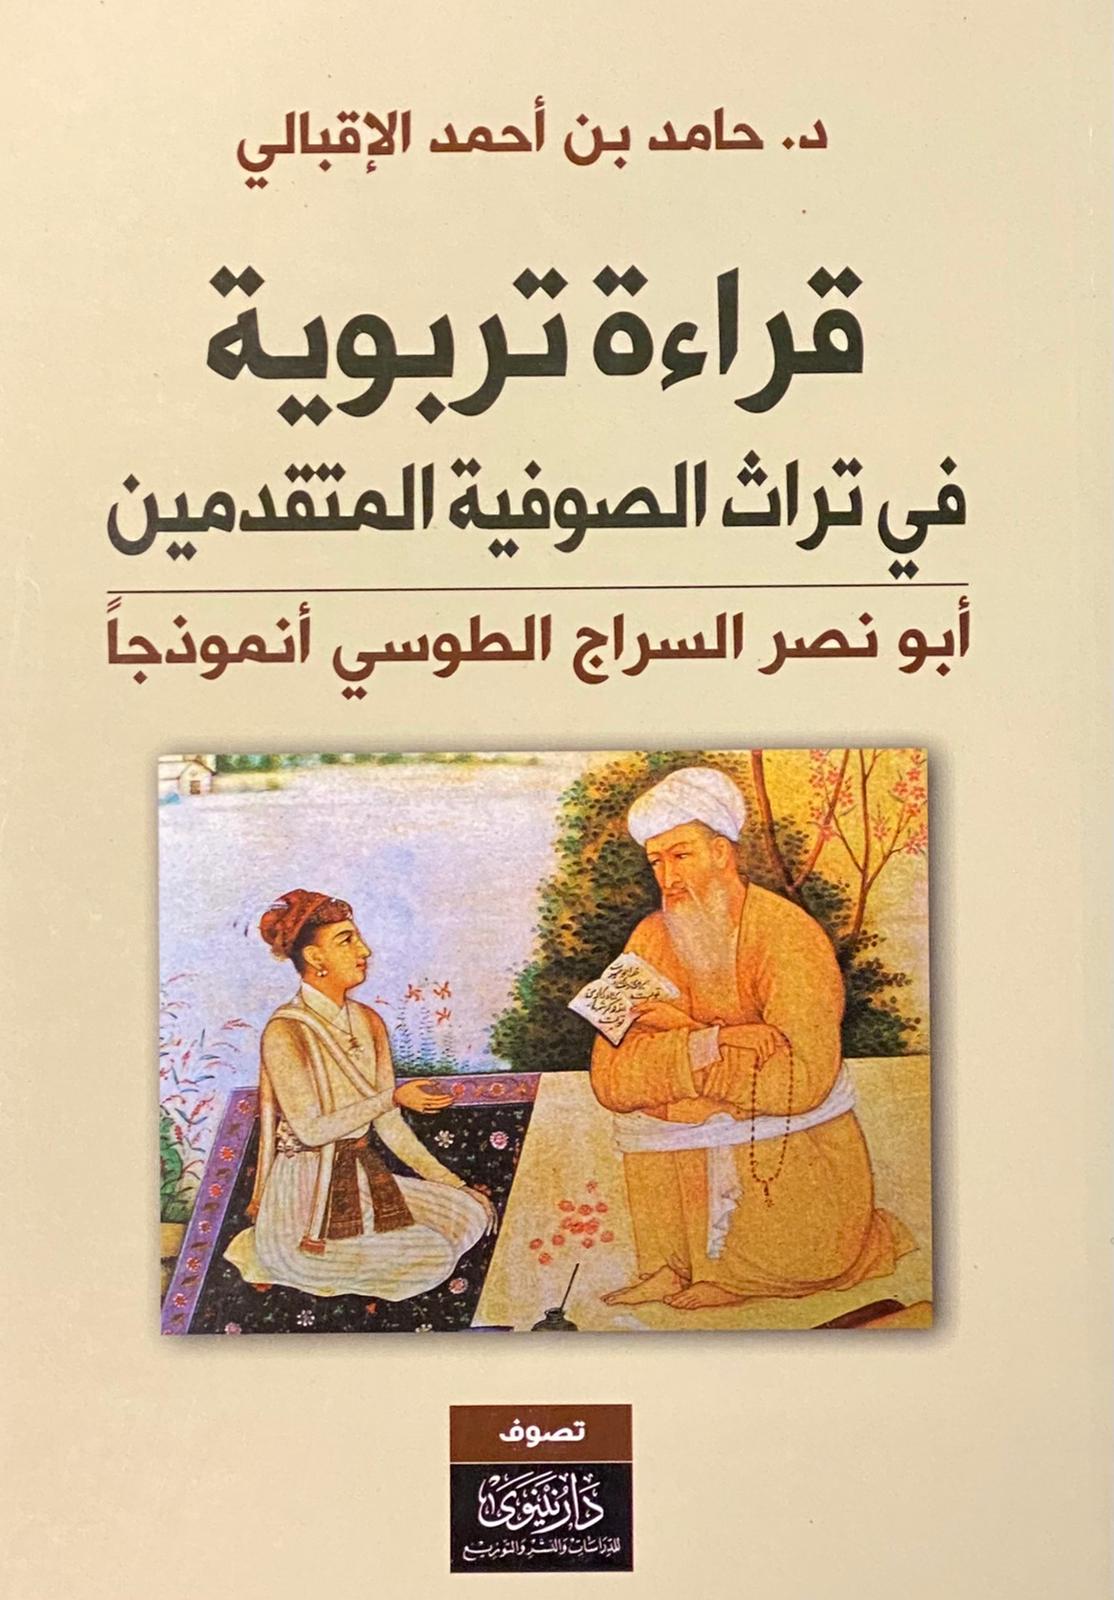 قراءة تربوية في تراث الصوفية المتقدمين